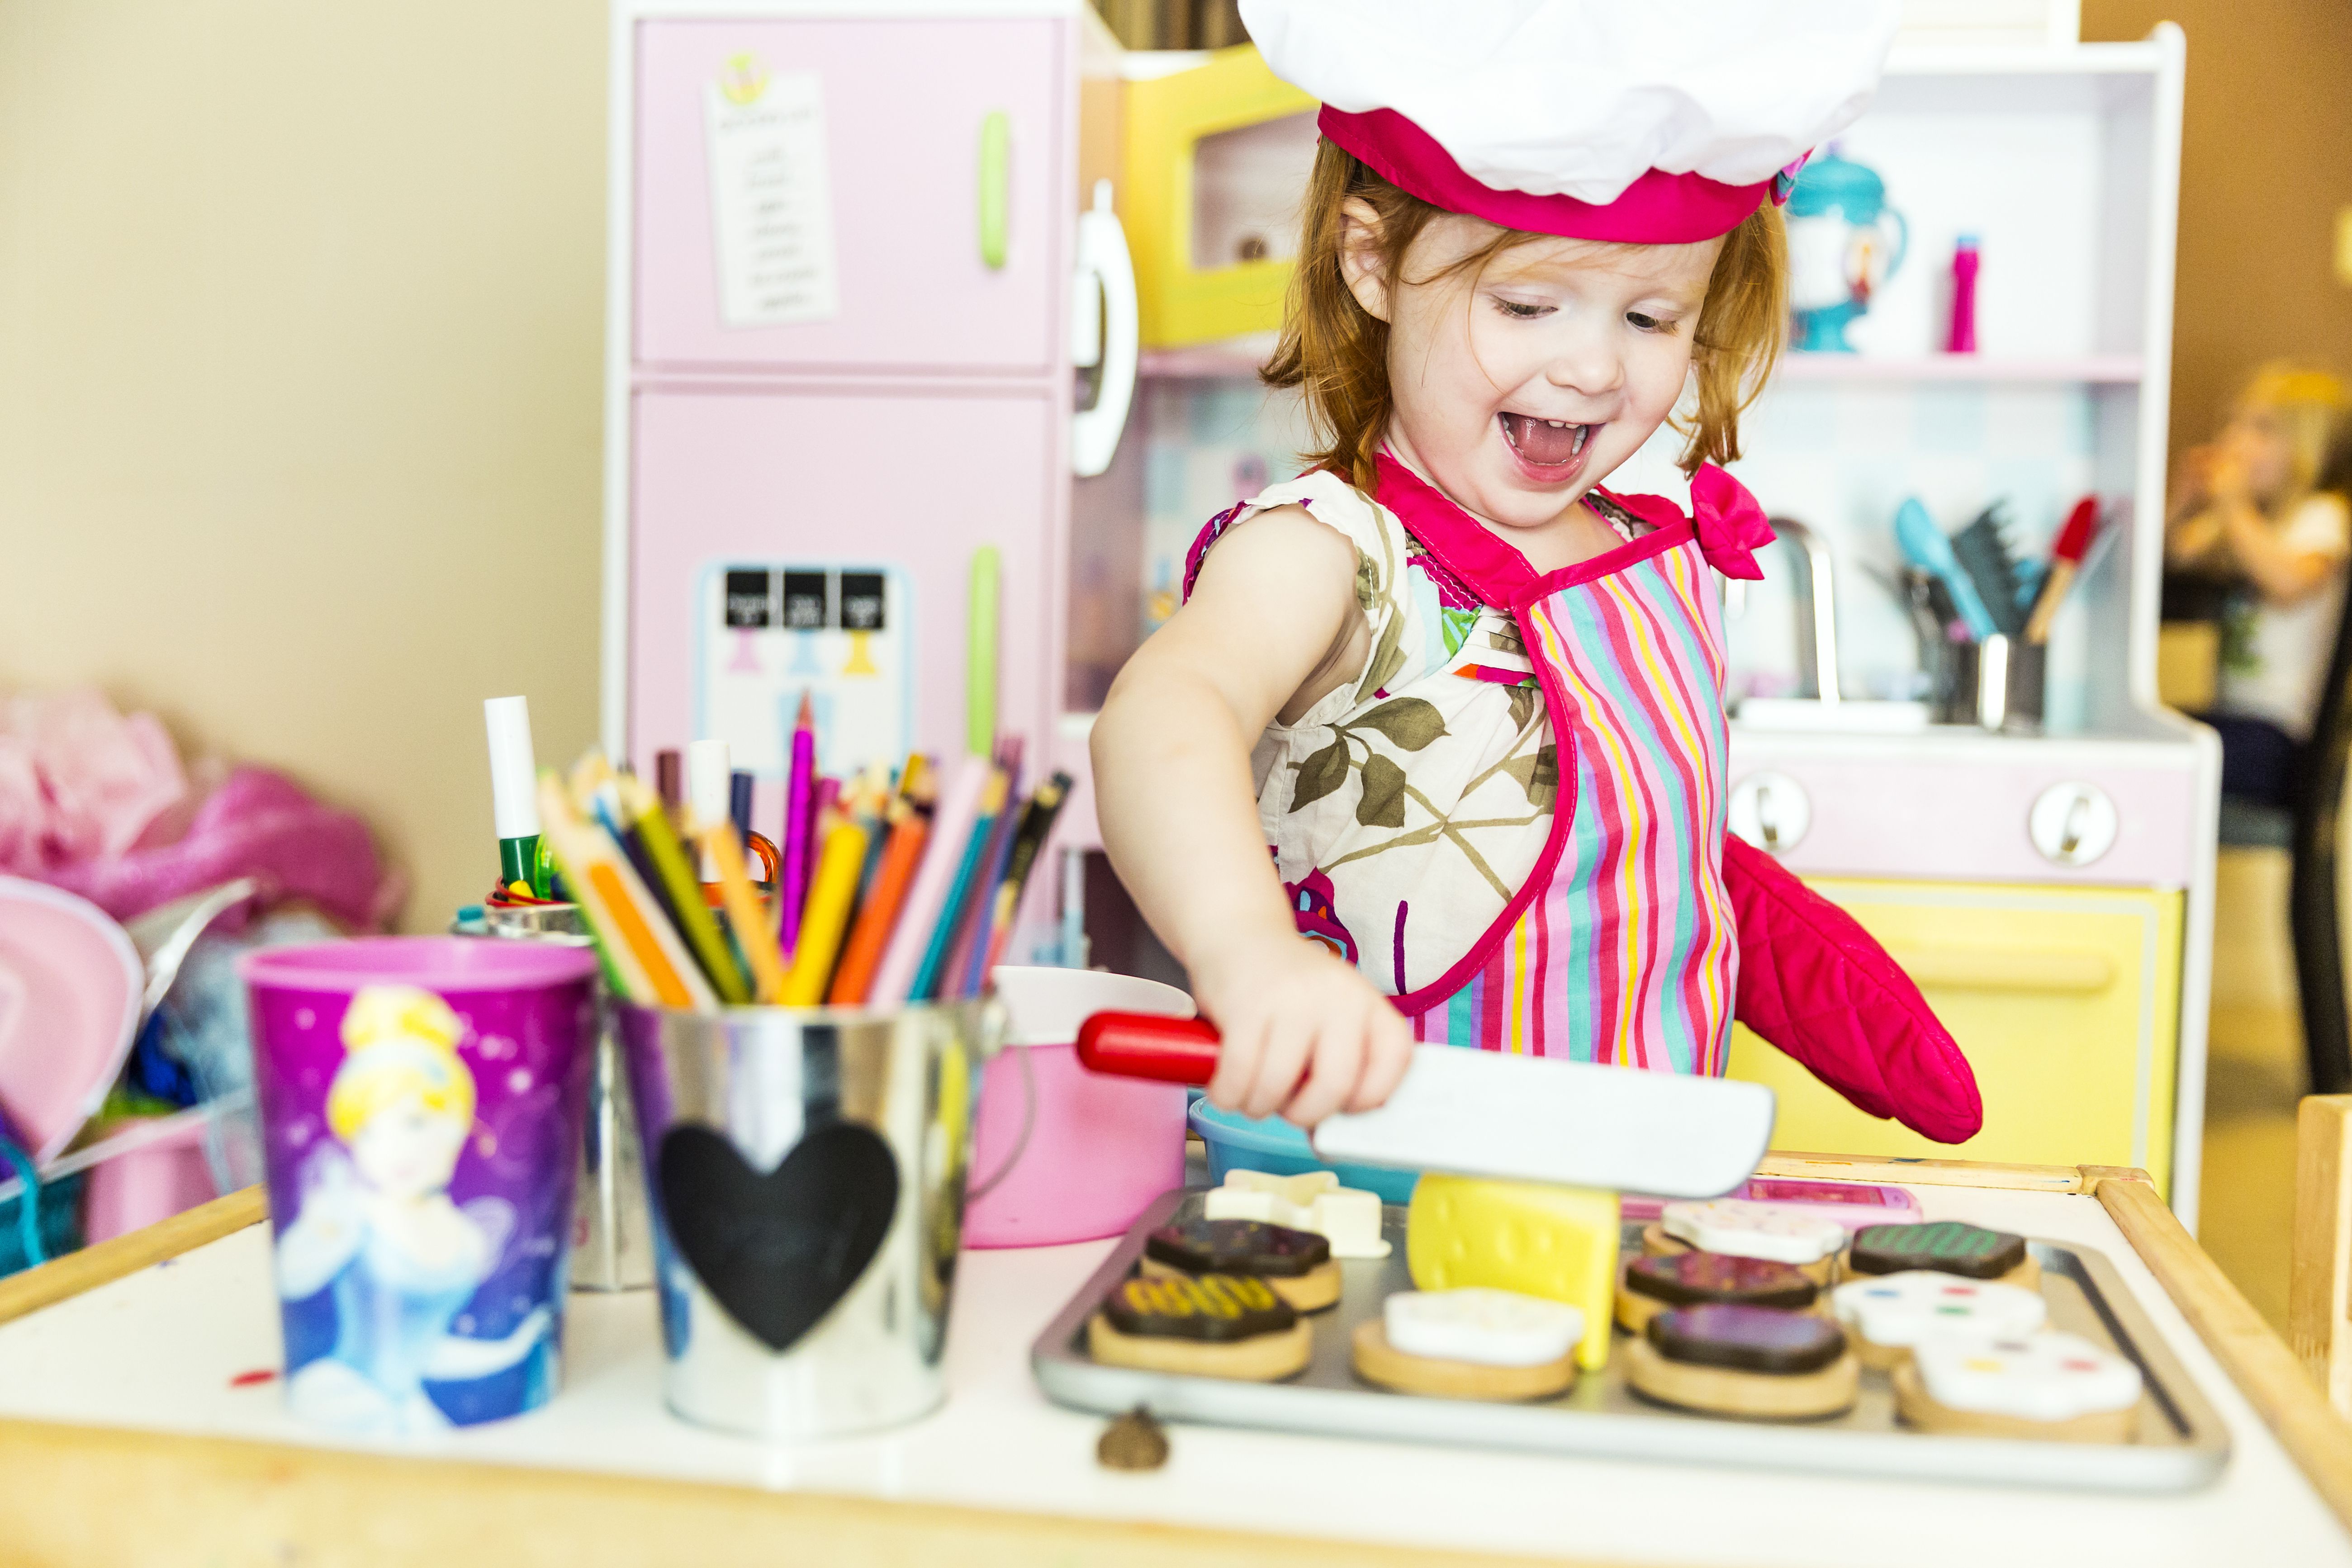 11 Best Kids Kitchen Sets